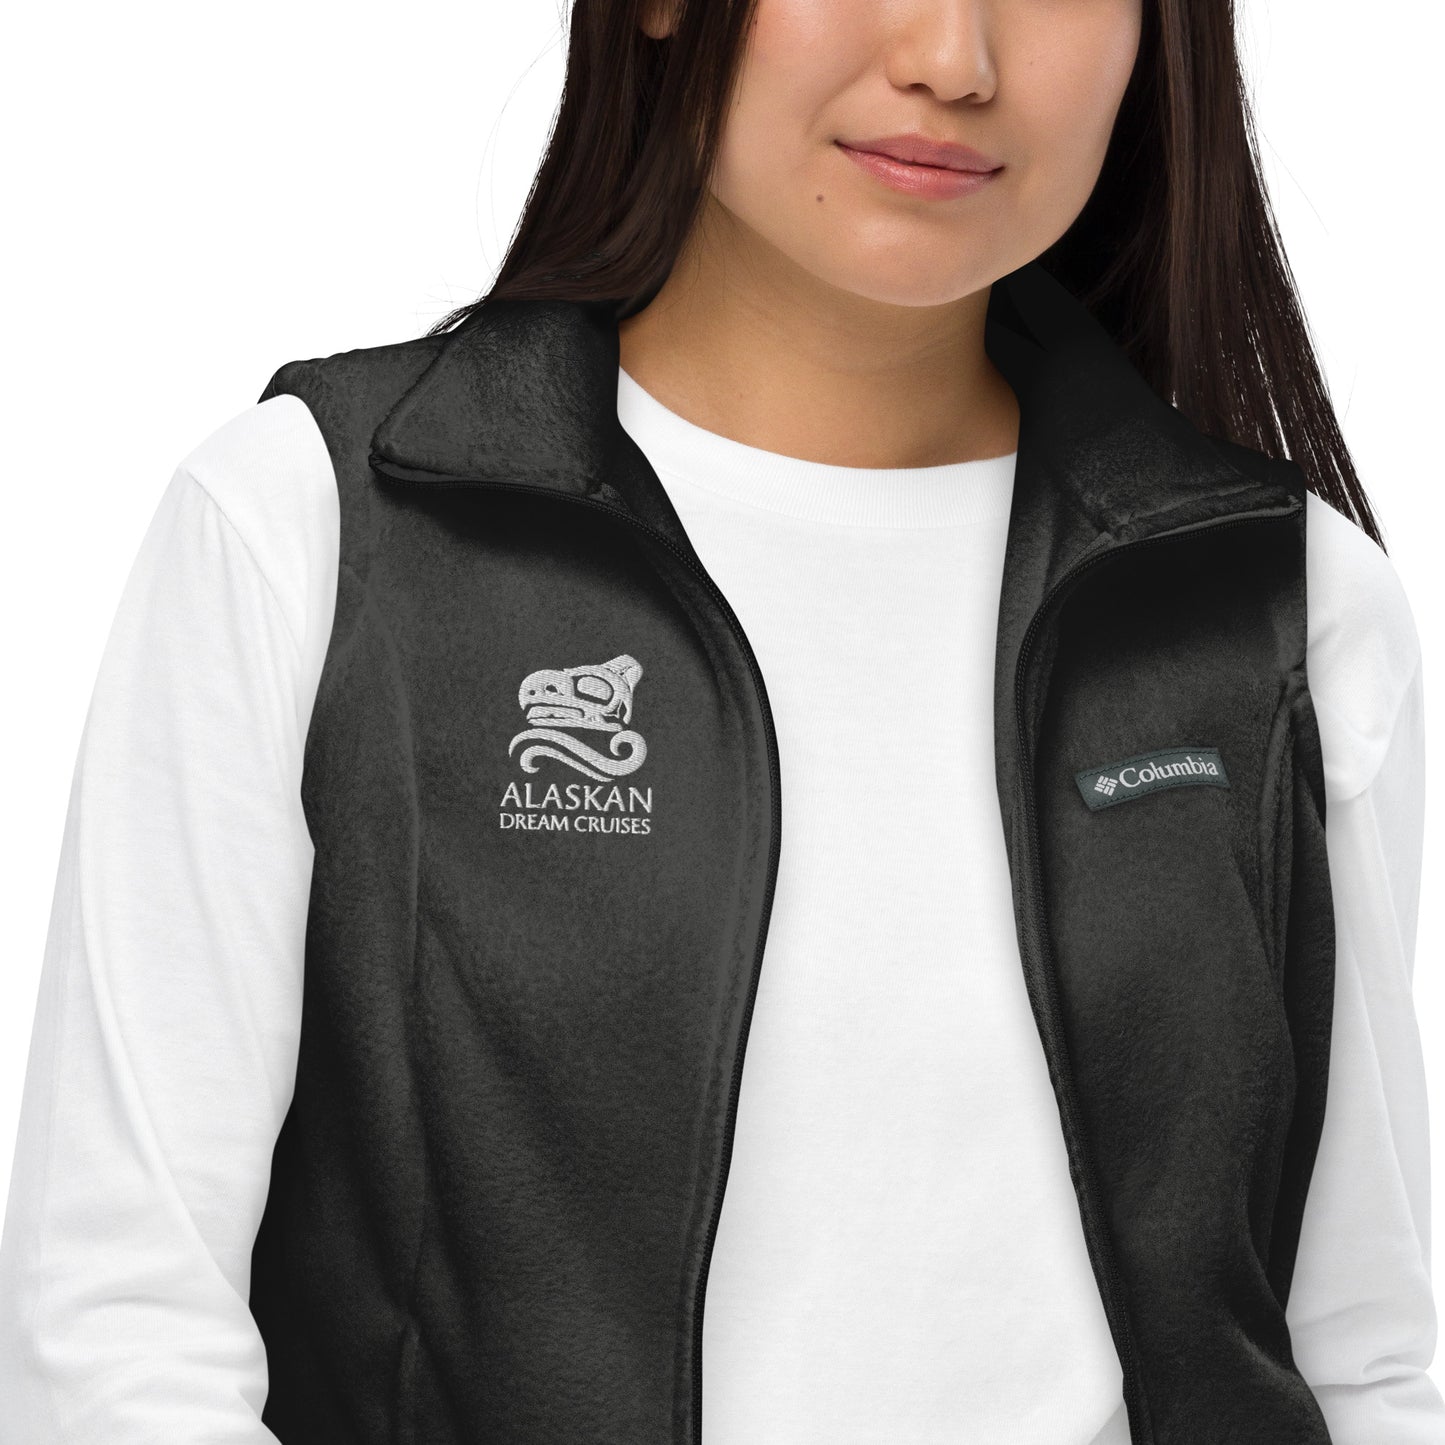 Logo'd Women’s Columbia fleece vest